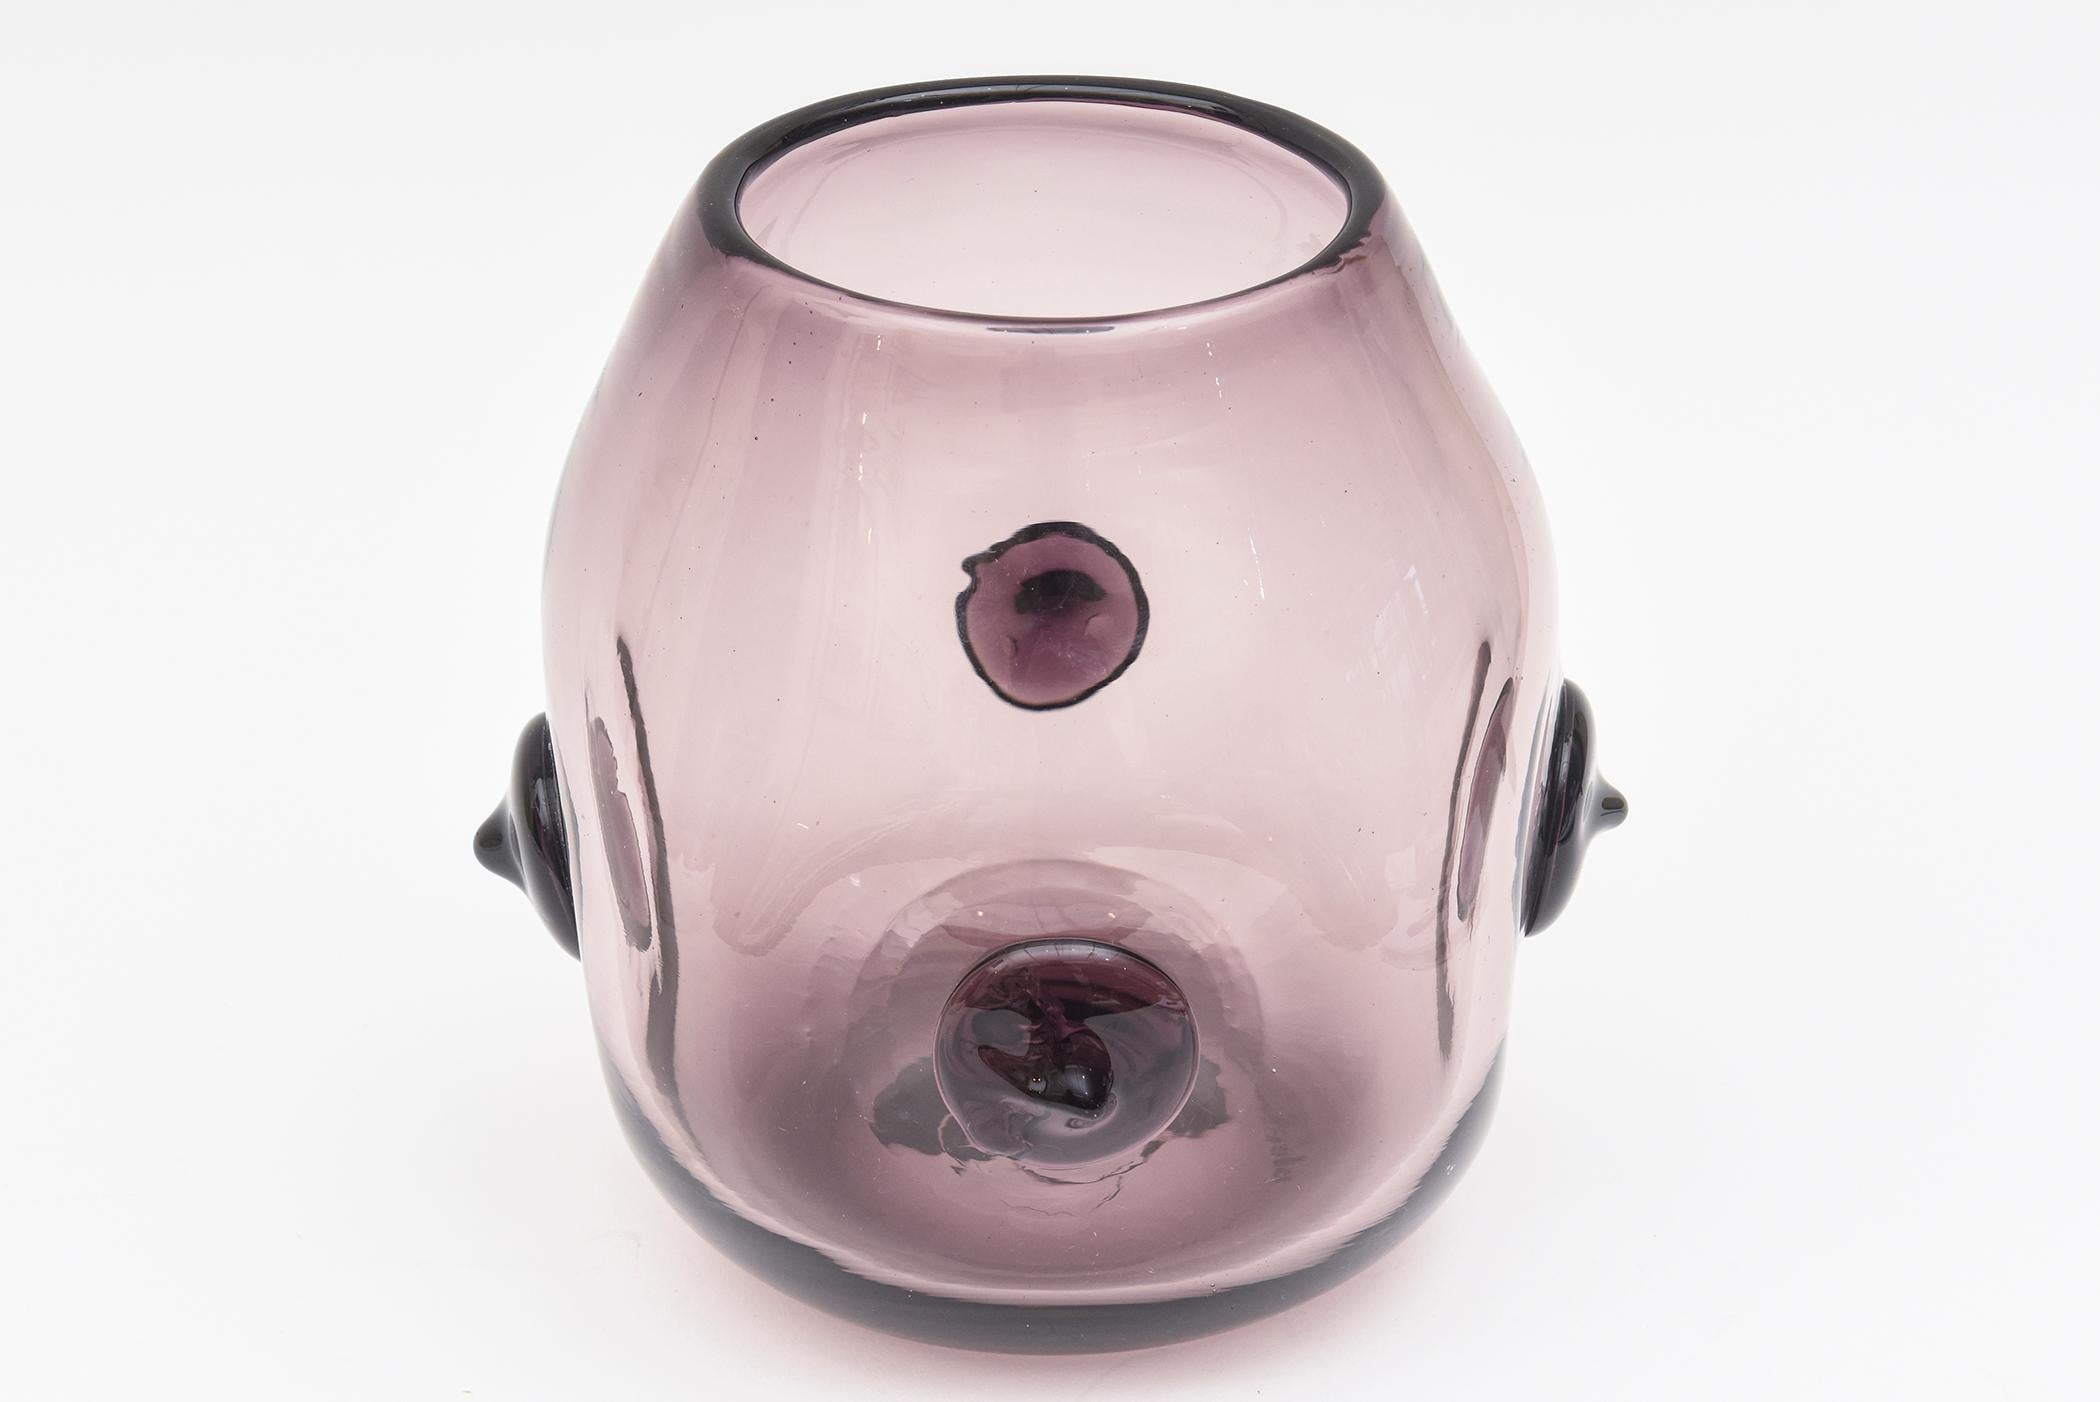 Diese seltene und obskure signierte Blenko Vase oder Gefäß ist eine üppige Farbe von hellen lila. Sie wurde von Wayne Husted für Blenko entworfen und war höchstwahrscheinlich ein experimentelles Stück, was sie noch seltener macht. Er ist von 4